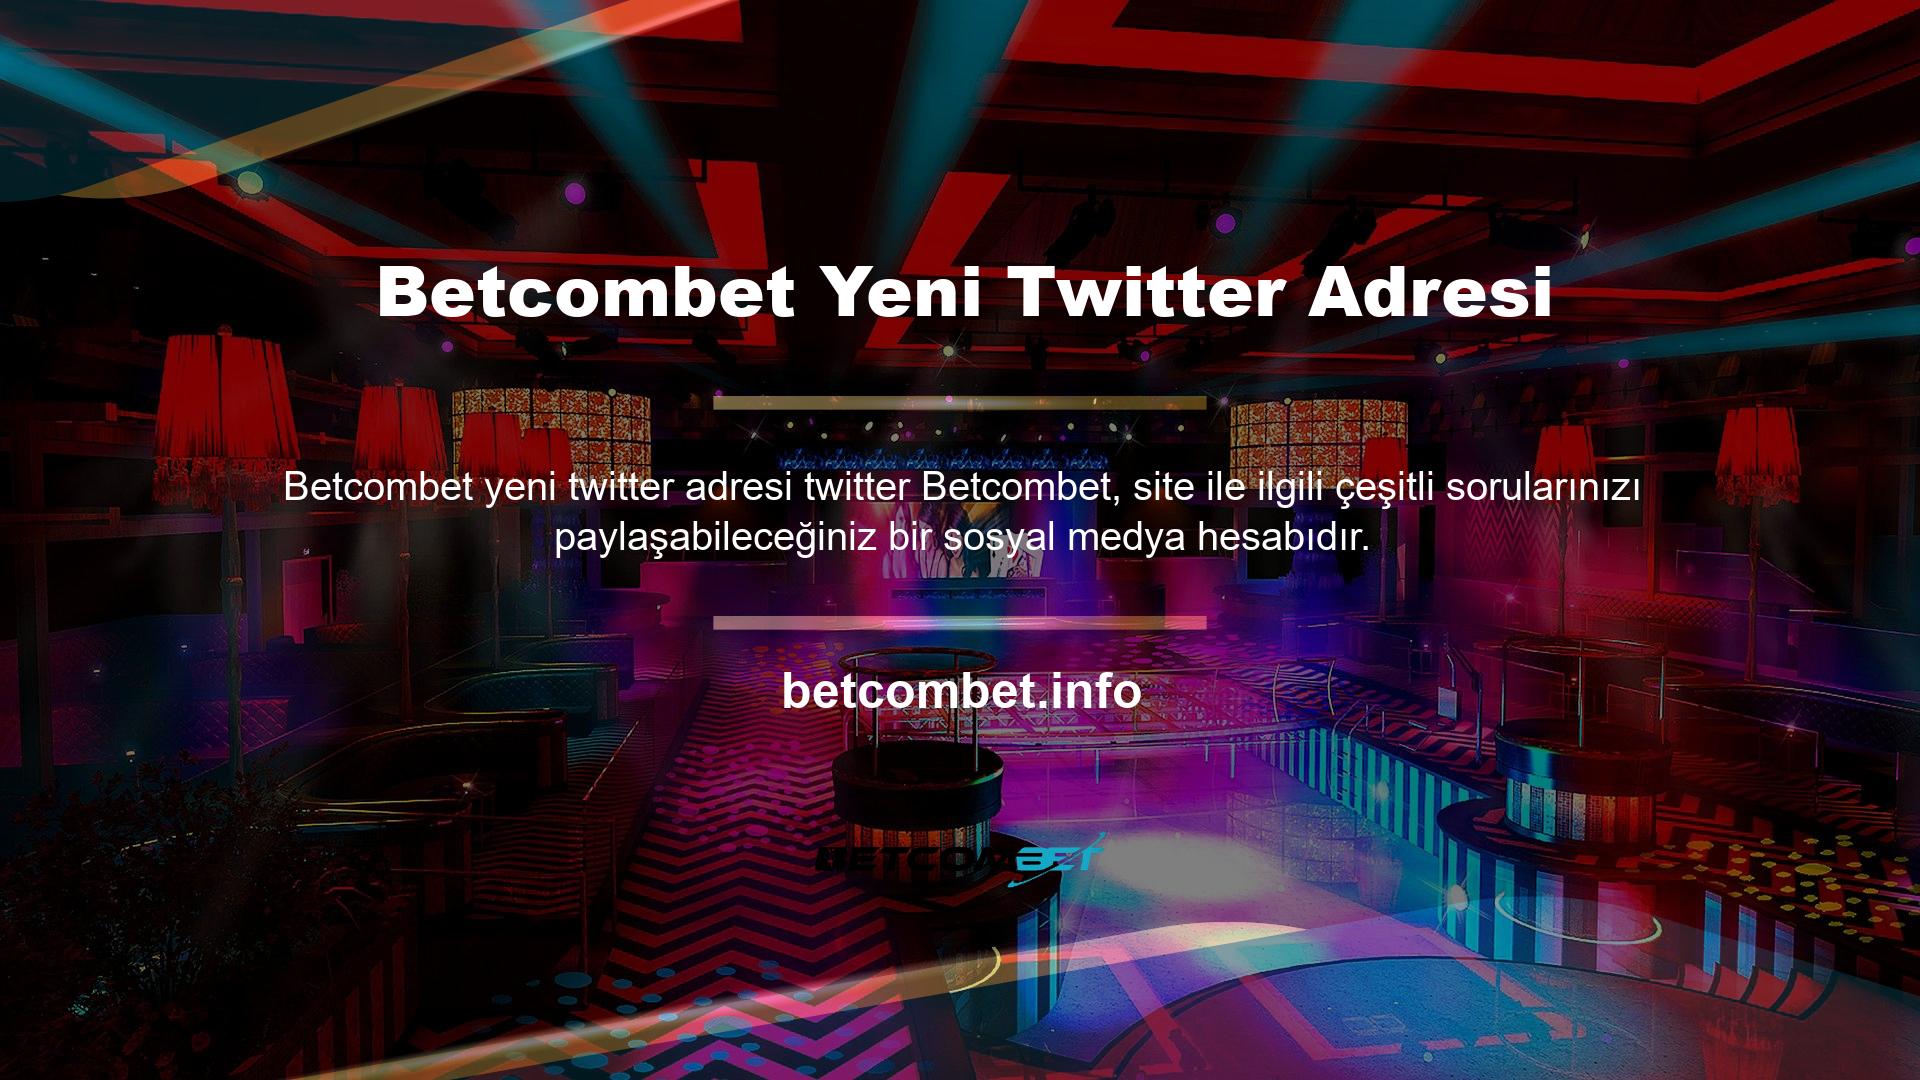 Betcombet yeni Twitter adresi nedir? Twitter hesabınızı açtığınızda site adı altında Türkiye'nin En Güvenilir Bahis Siteleri gibi yazıları göreceksiniz